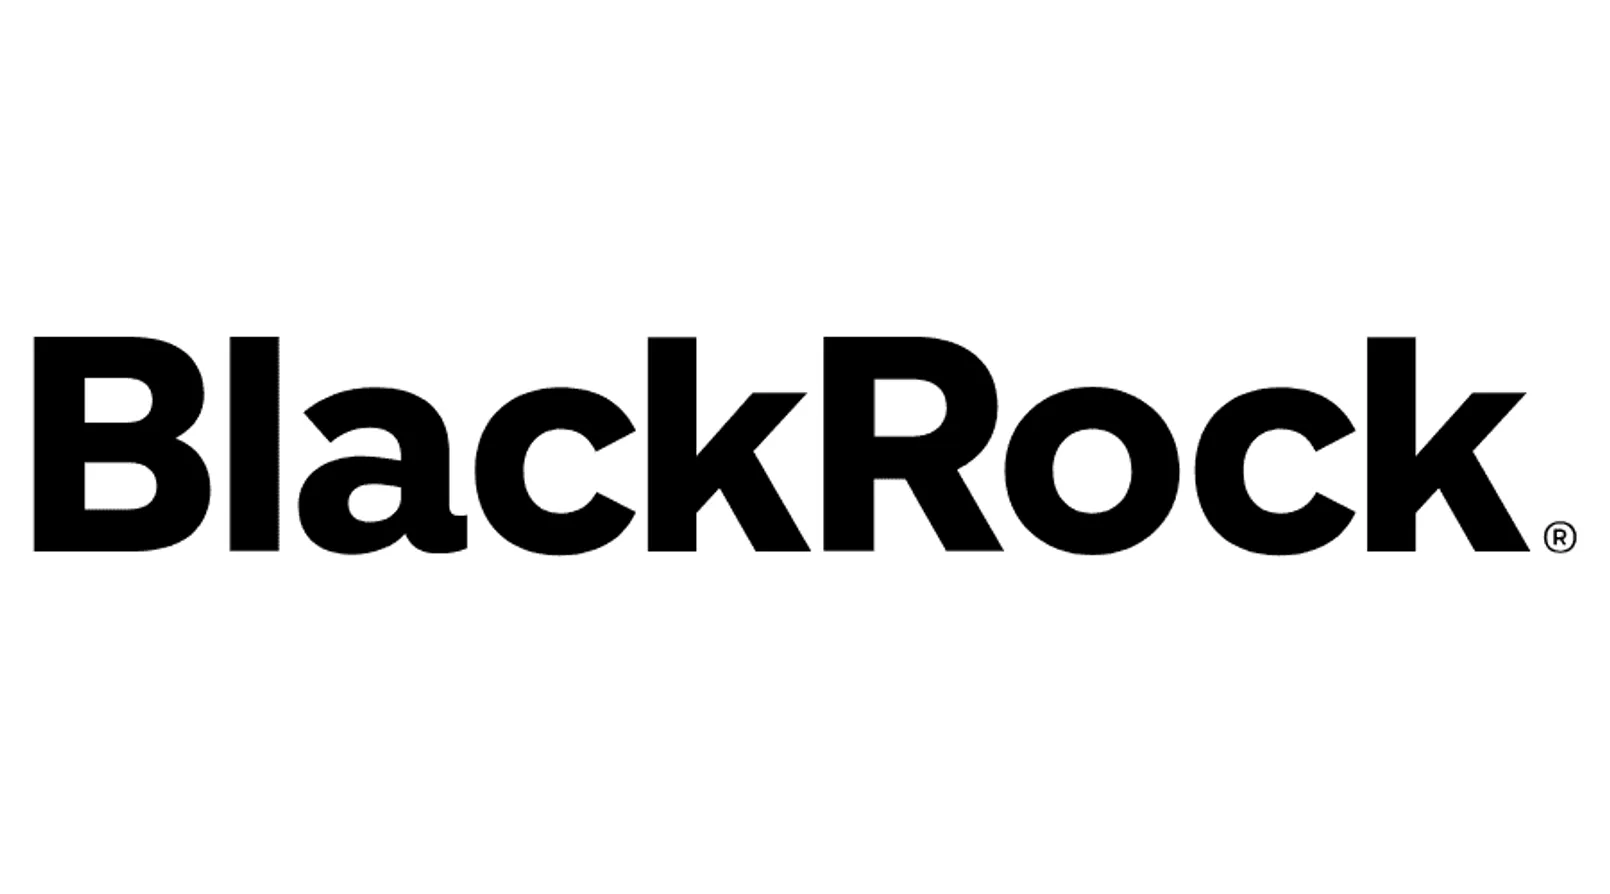 Blackrock Inc Vector Logo.png